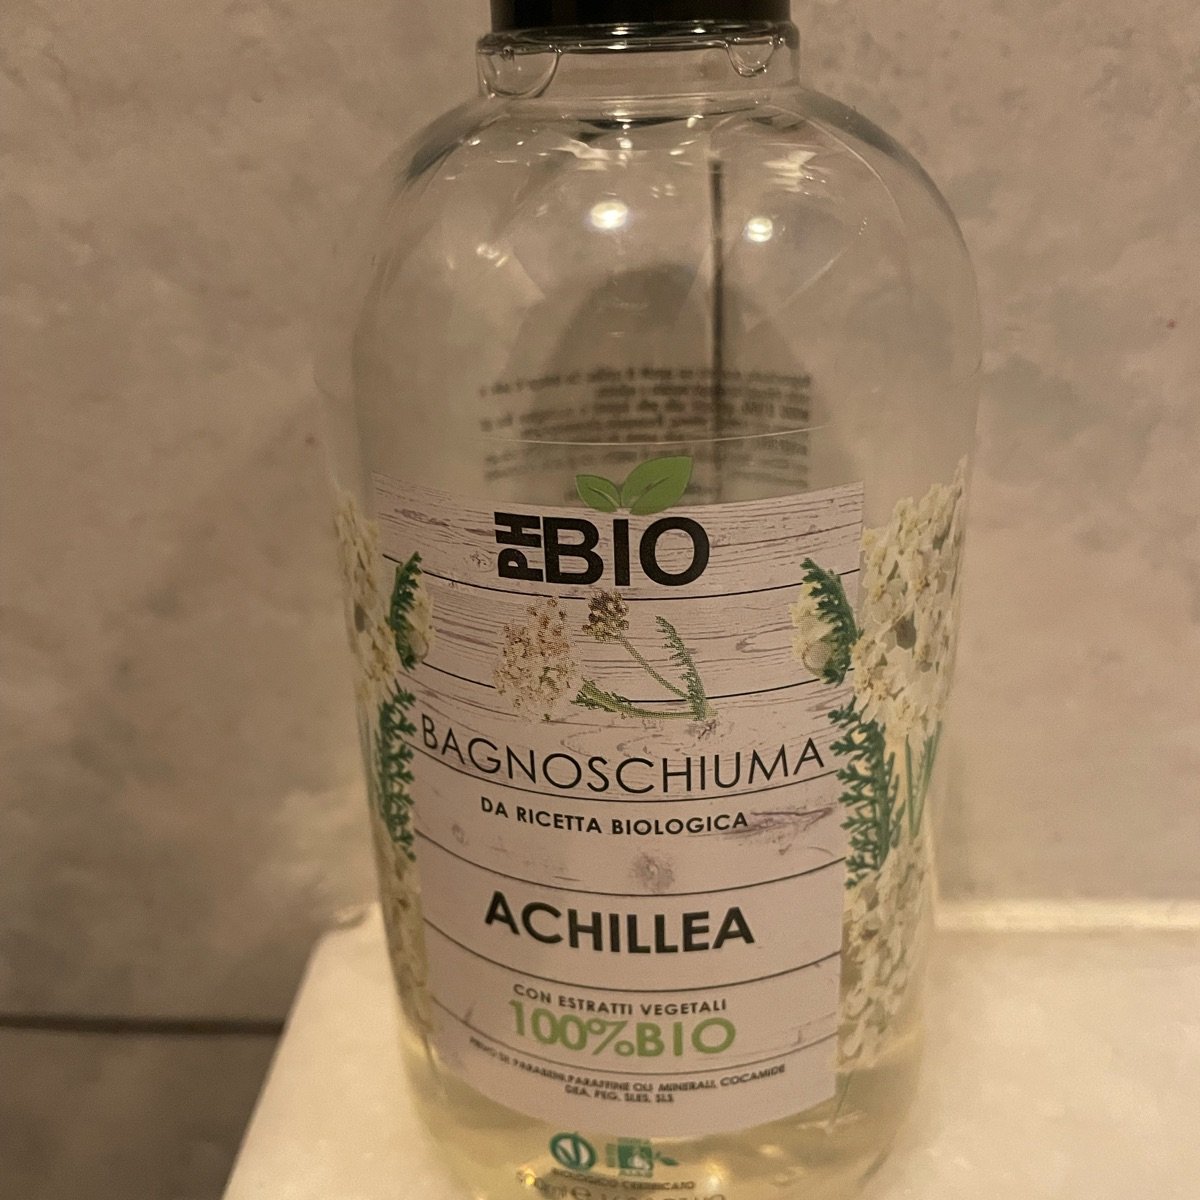 Phbio Bagno schiuma achillea Reviews | abillion